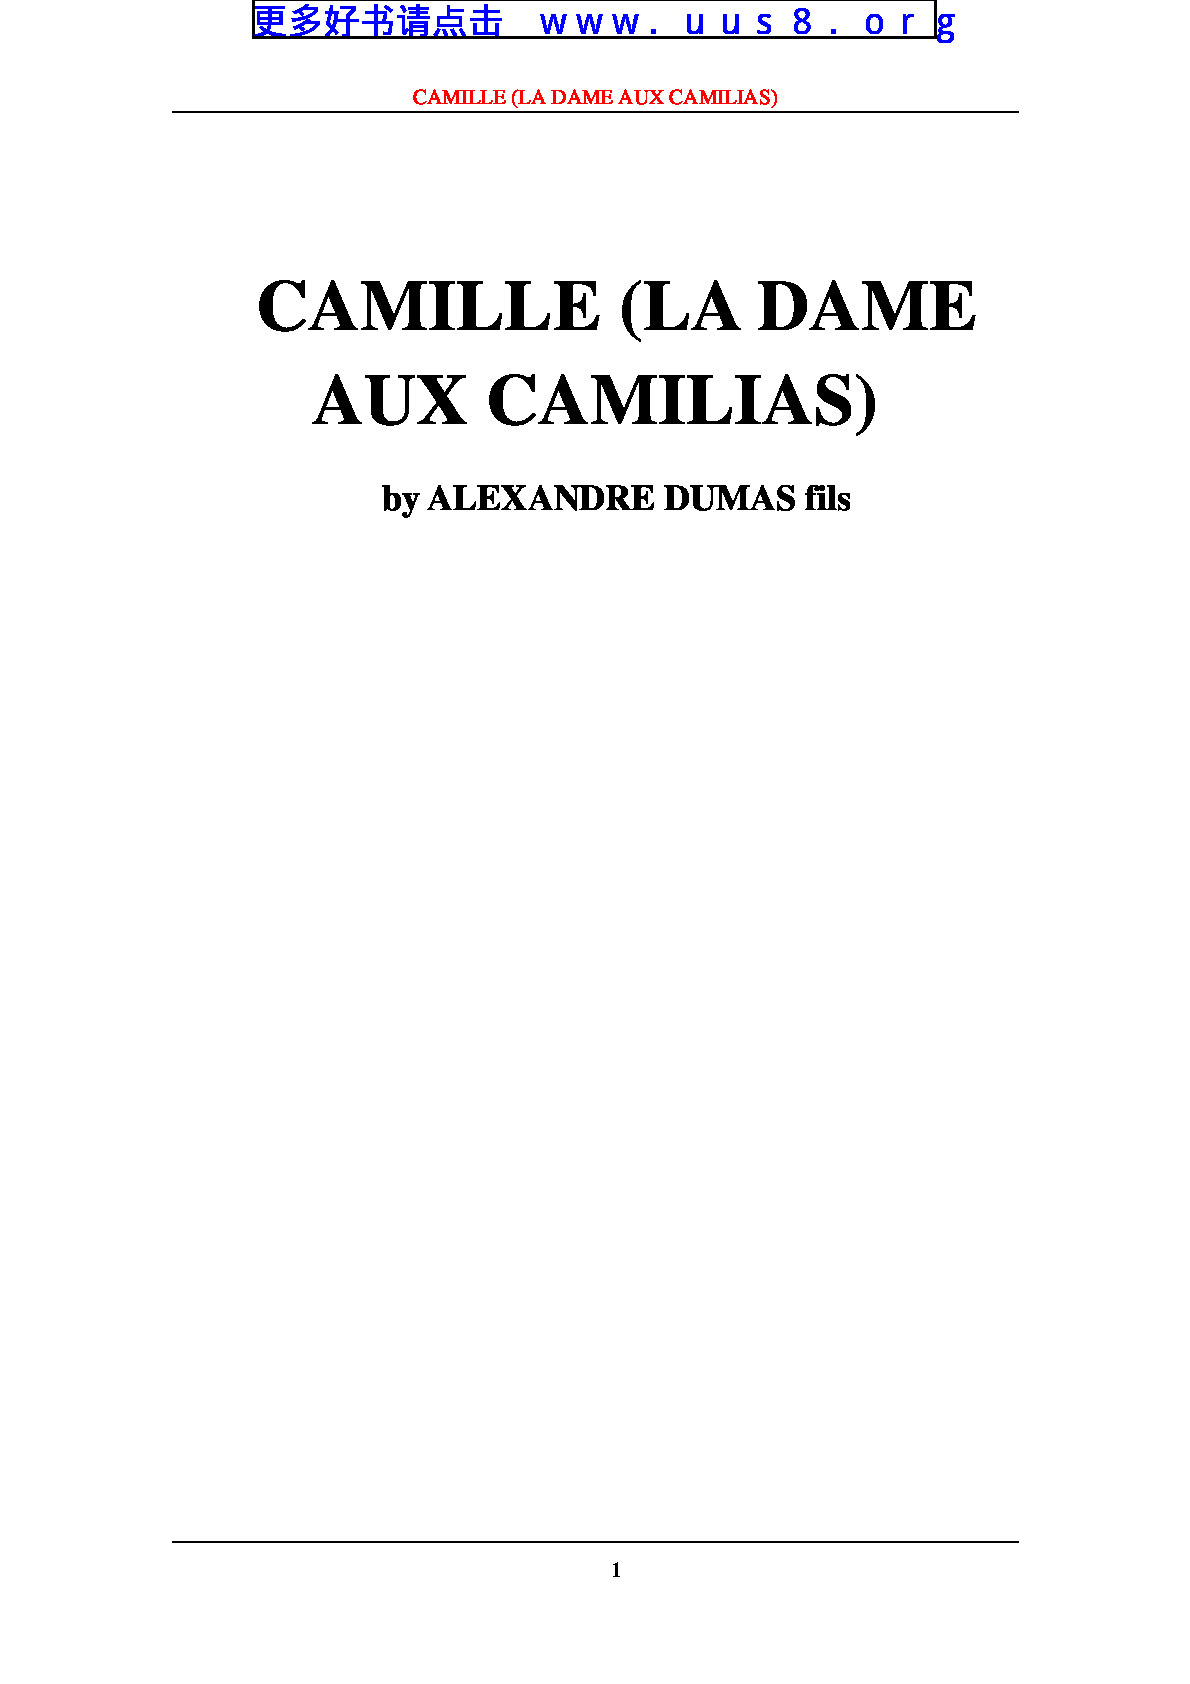 CAMILLE_(LA_DAME_AUX_CAMILIAS)(卡米勒)